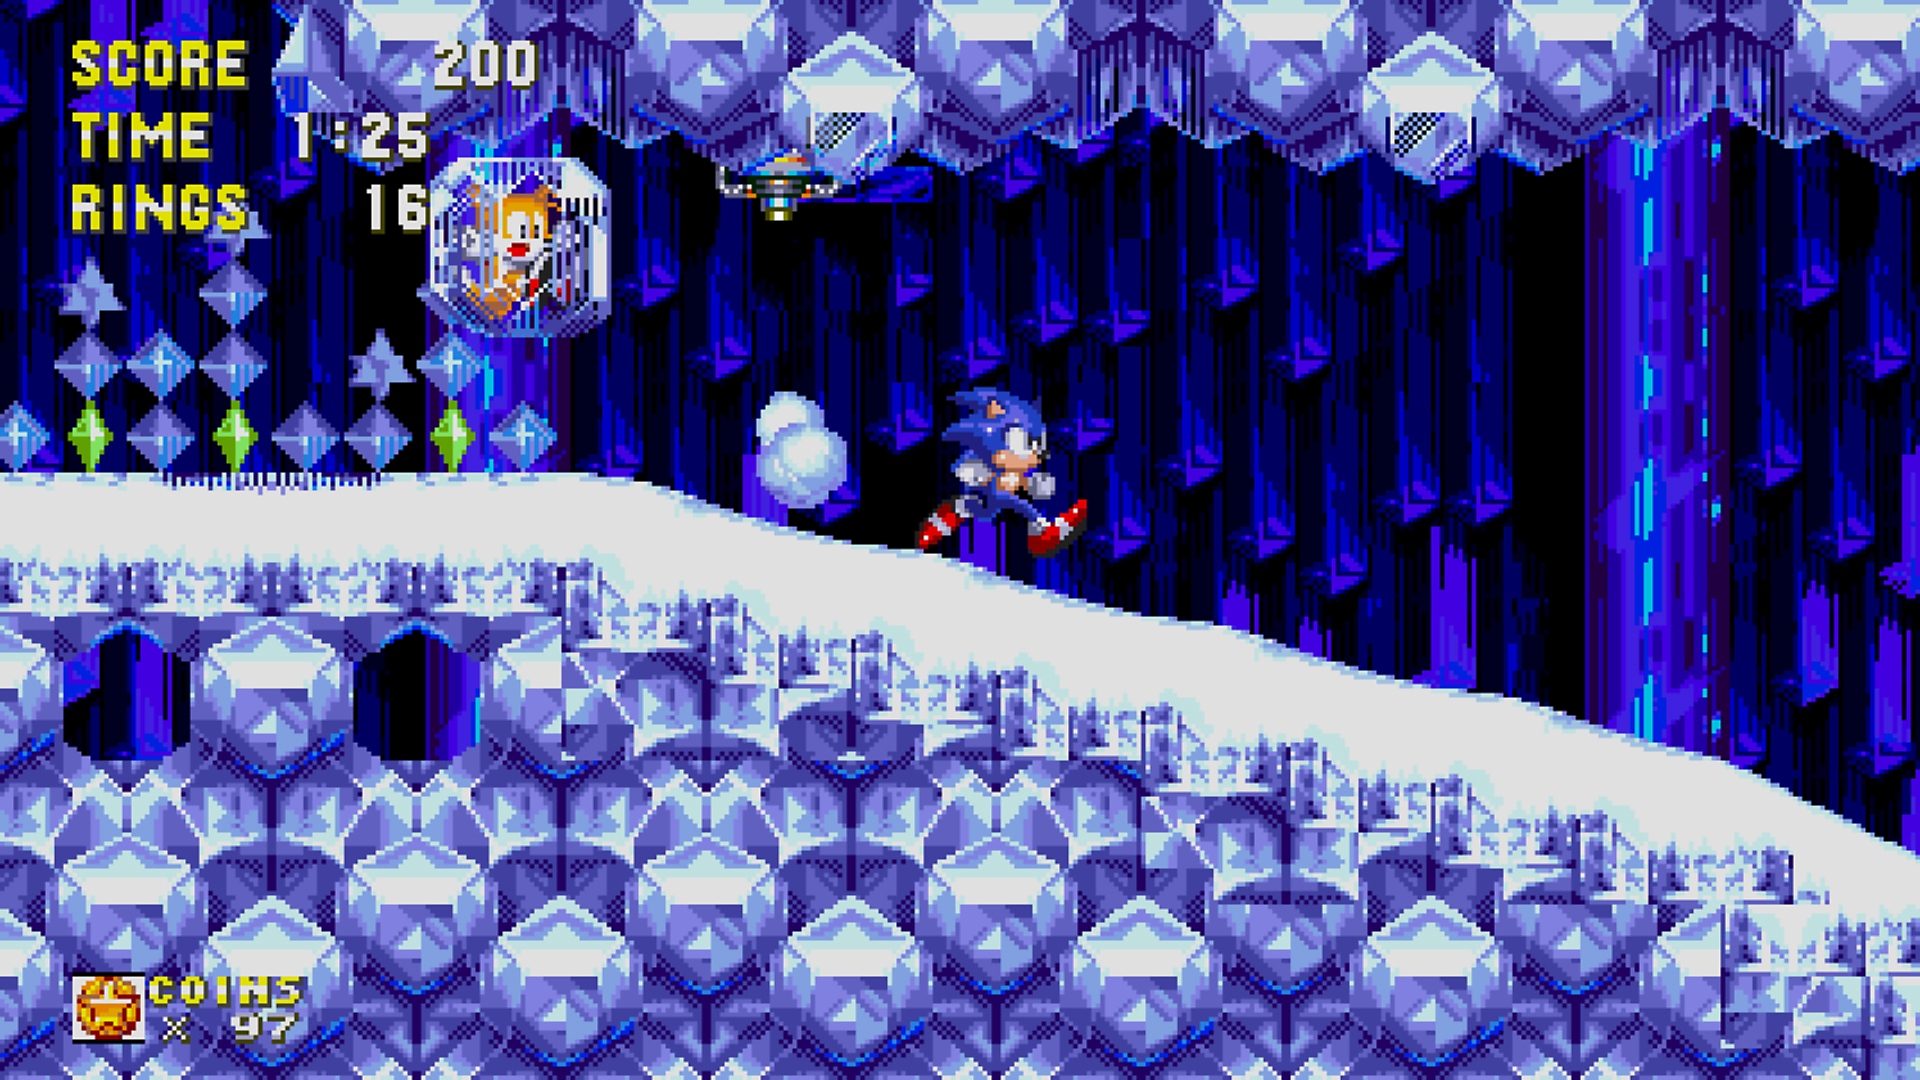 Snimka zaslona iz igre Sonic Origins koja prikazuje Sonica kako trči kroz ledenu razinu